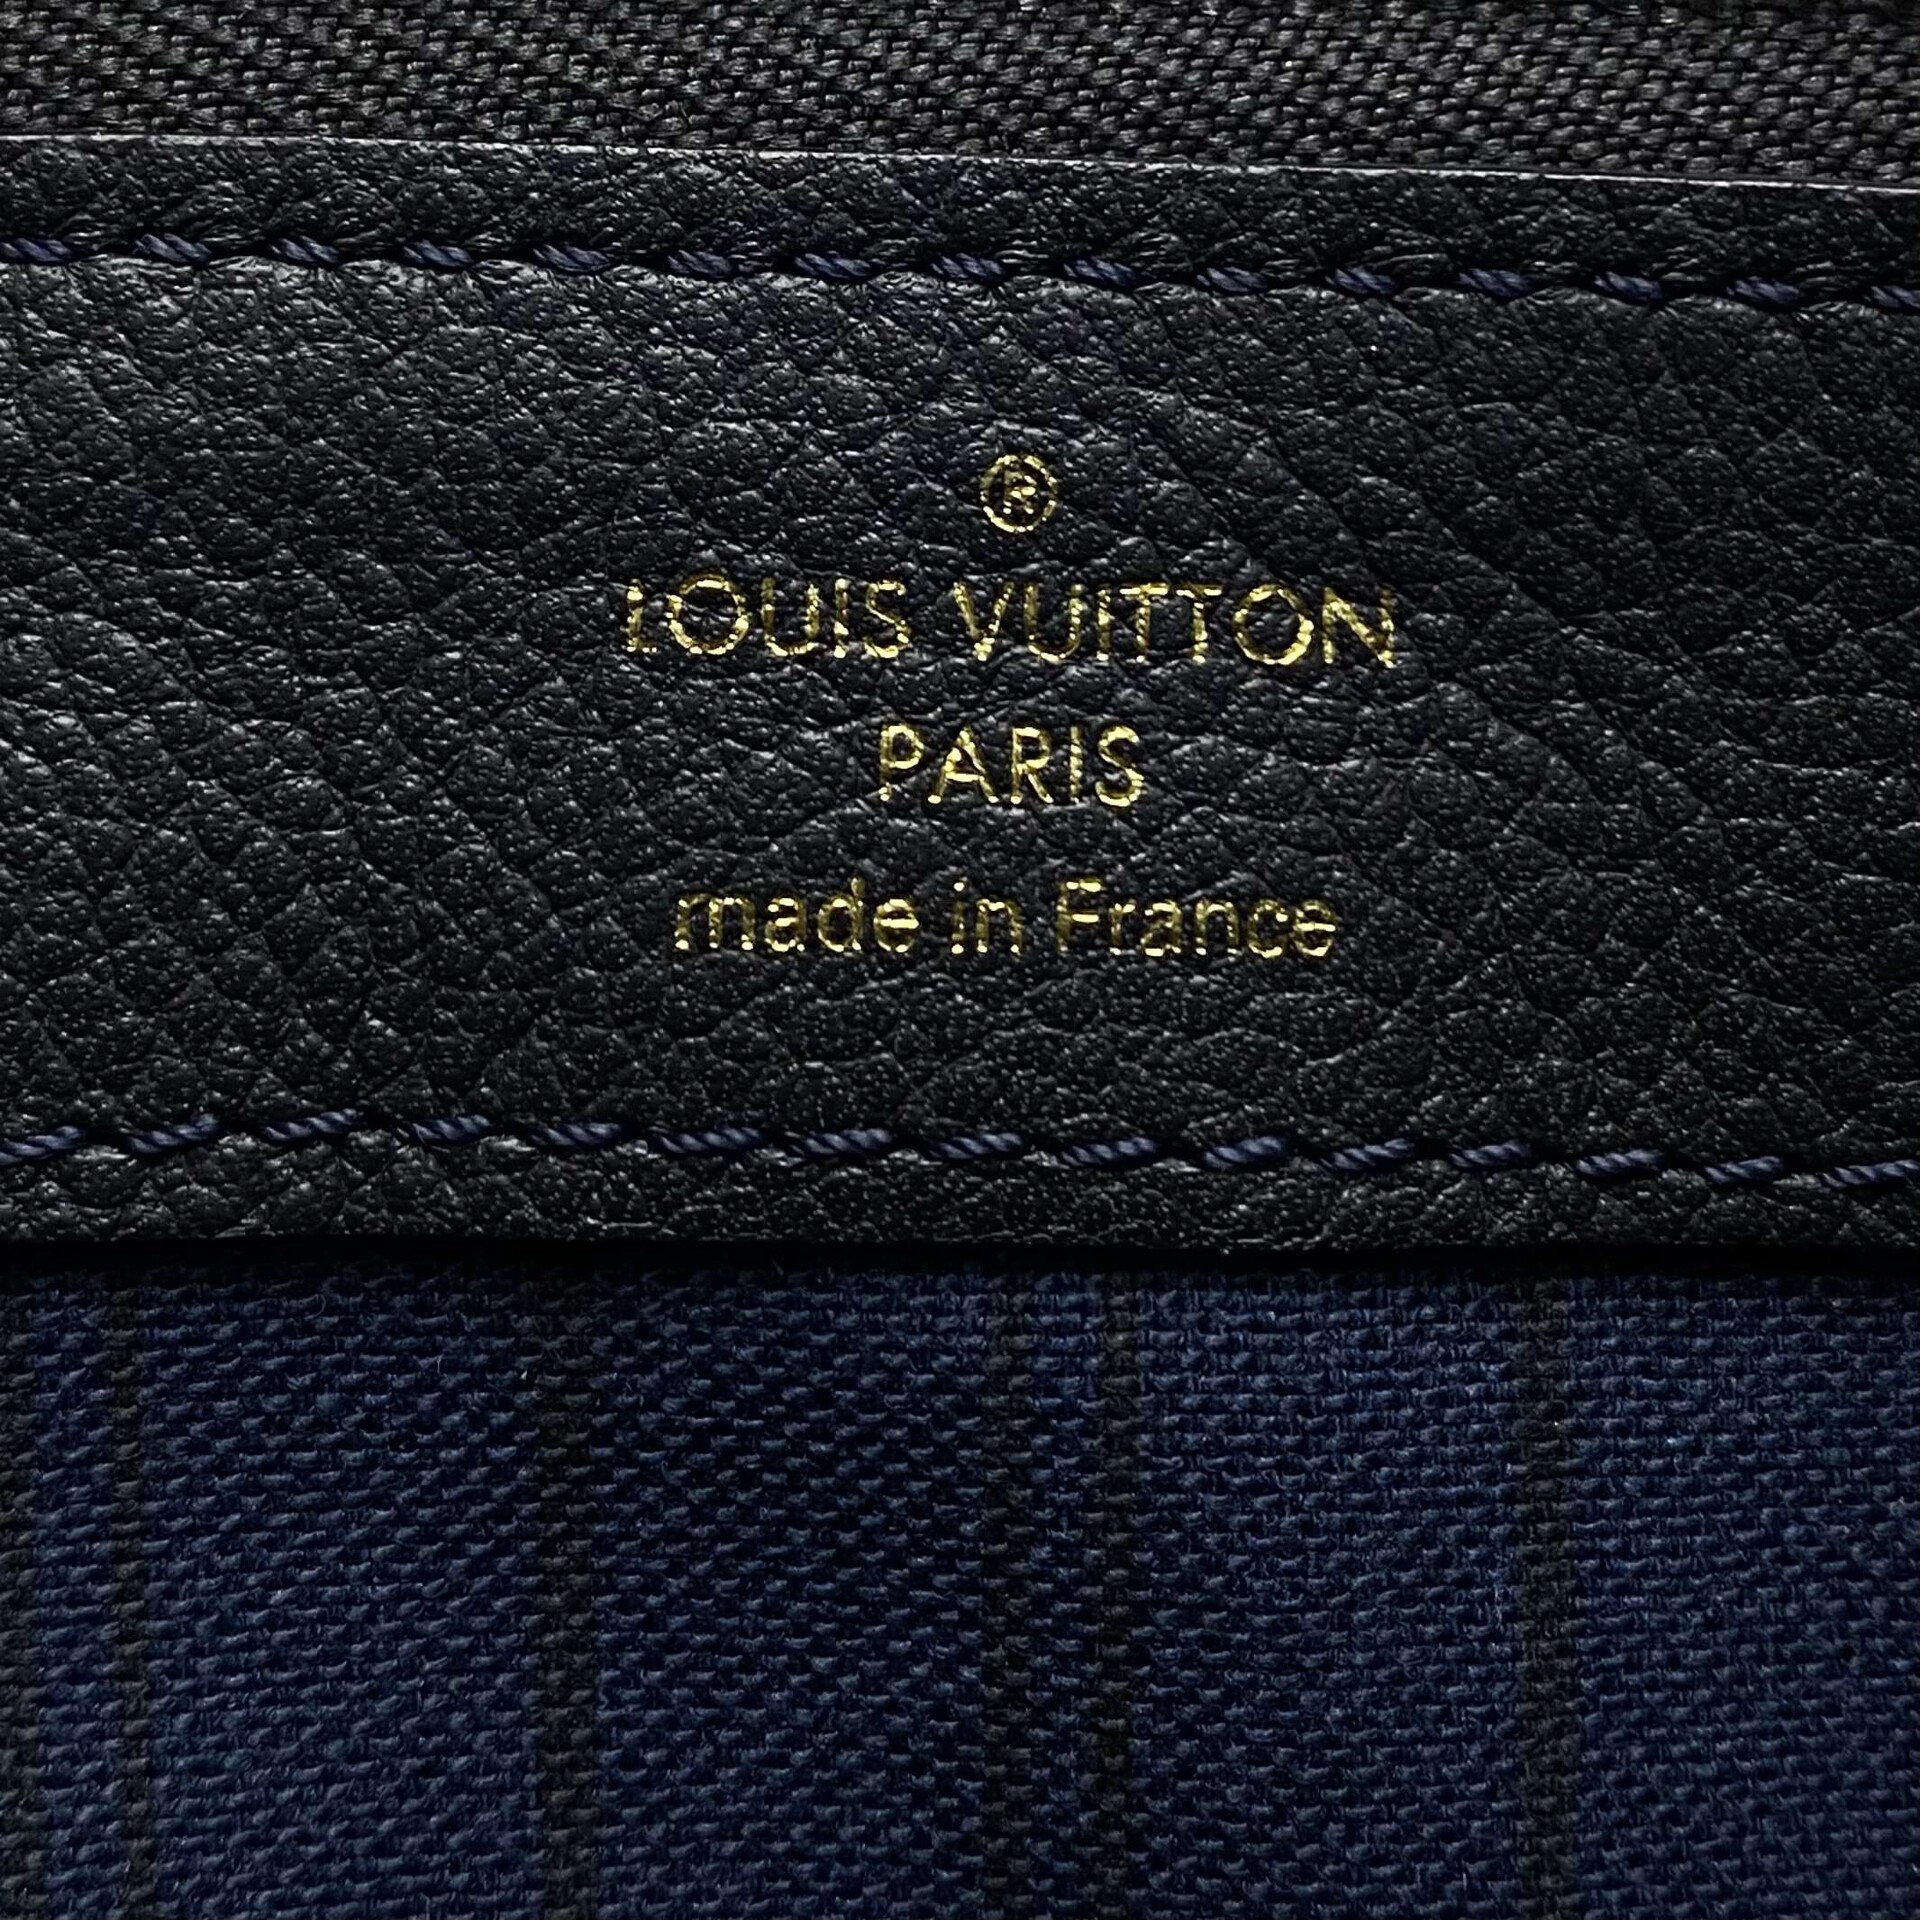 Clutch Louis Vuitton Petillante Empreinte